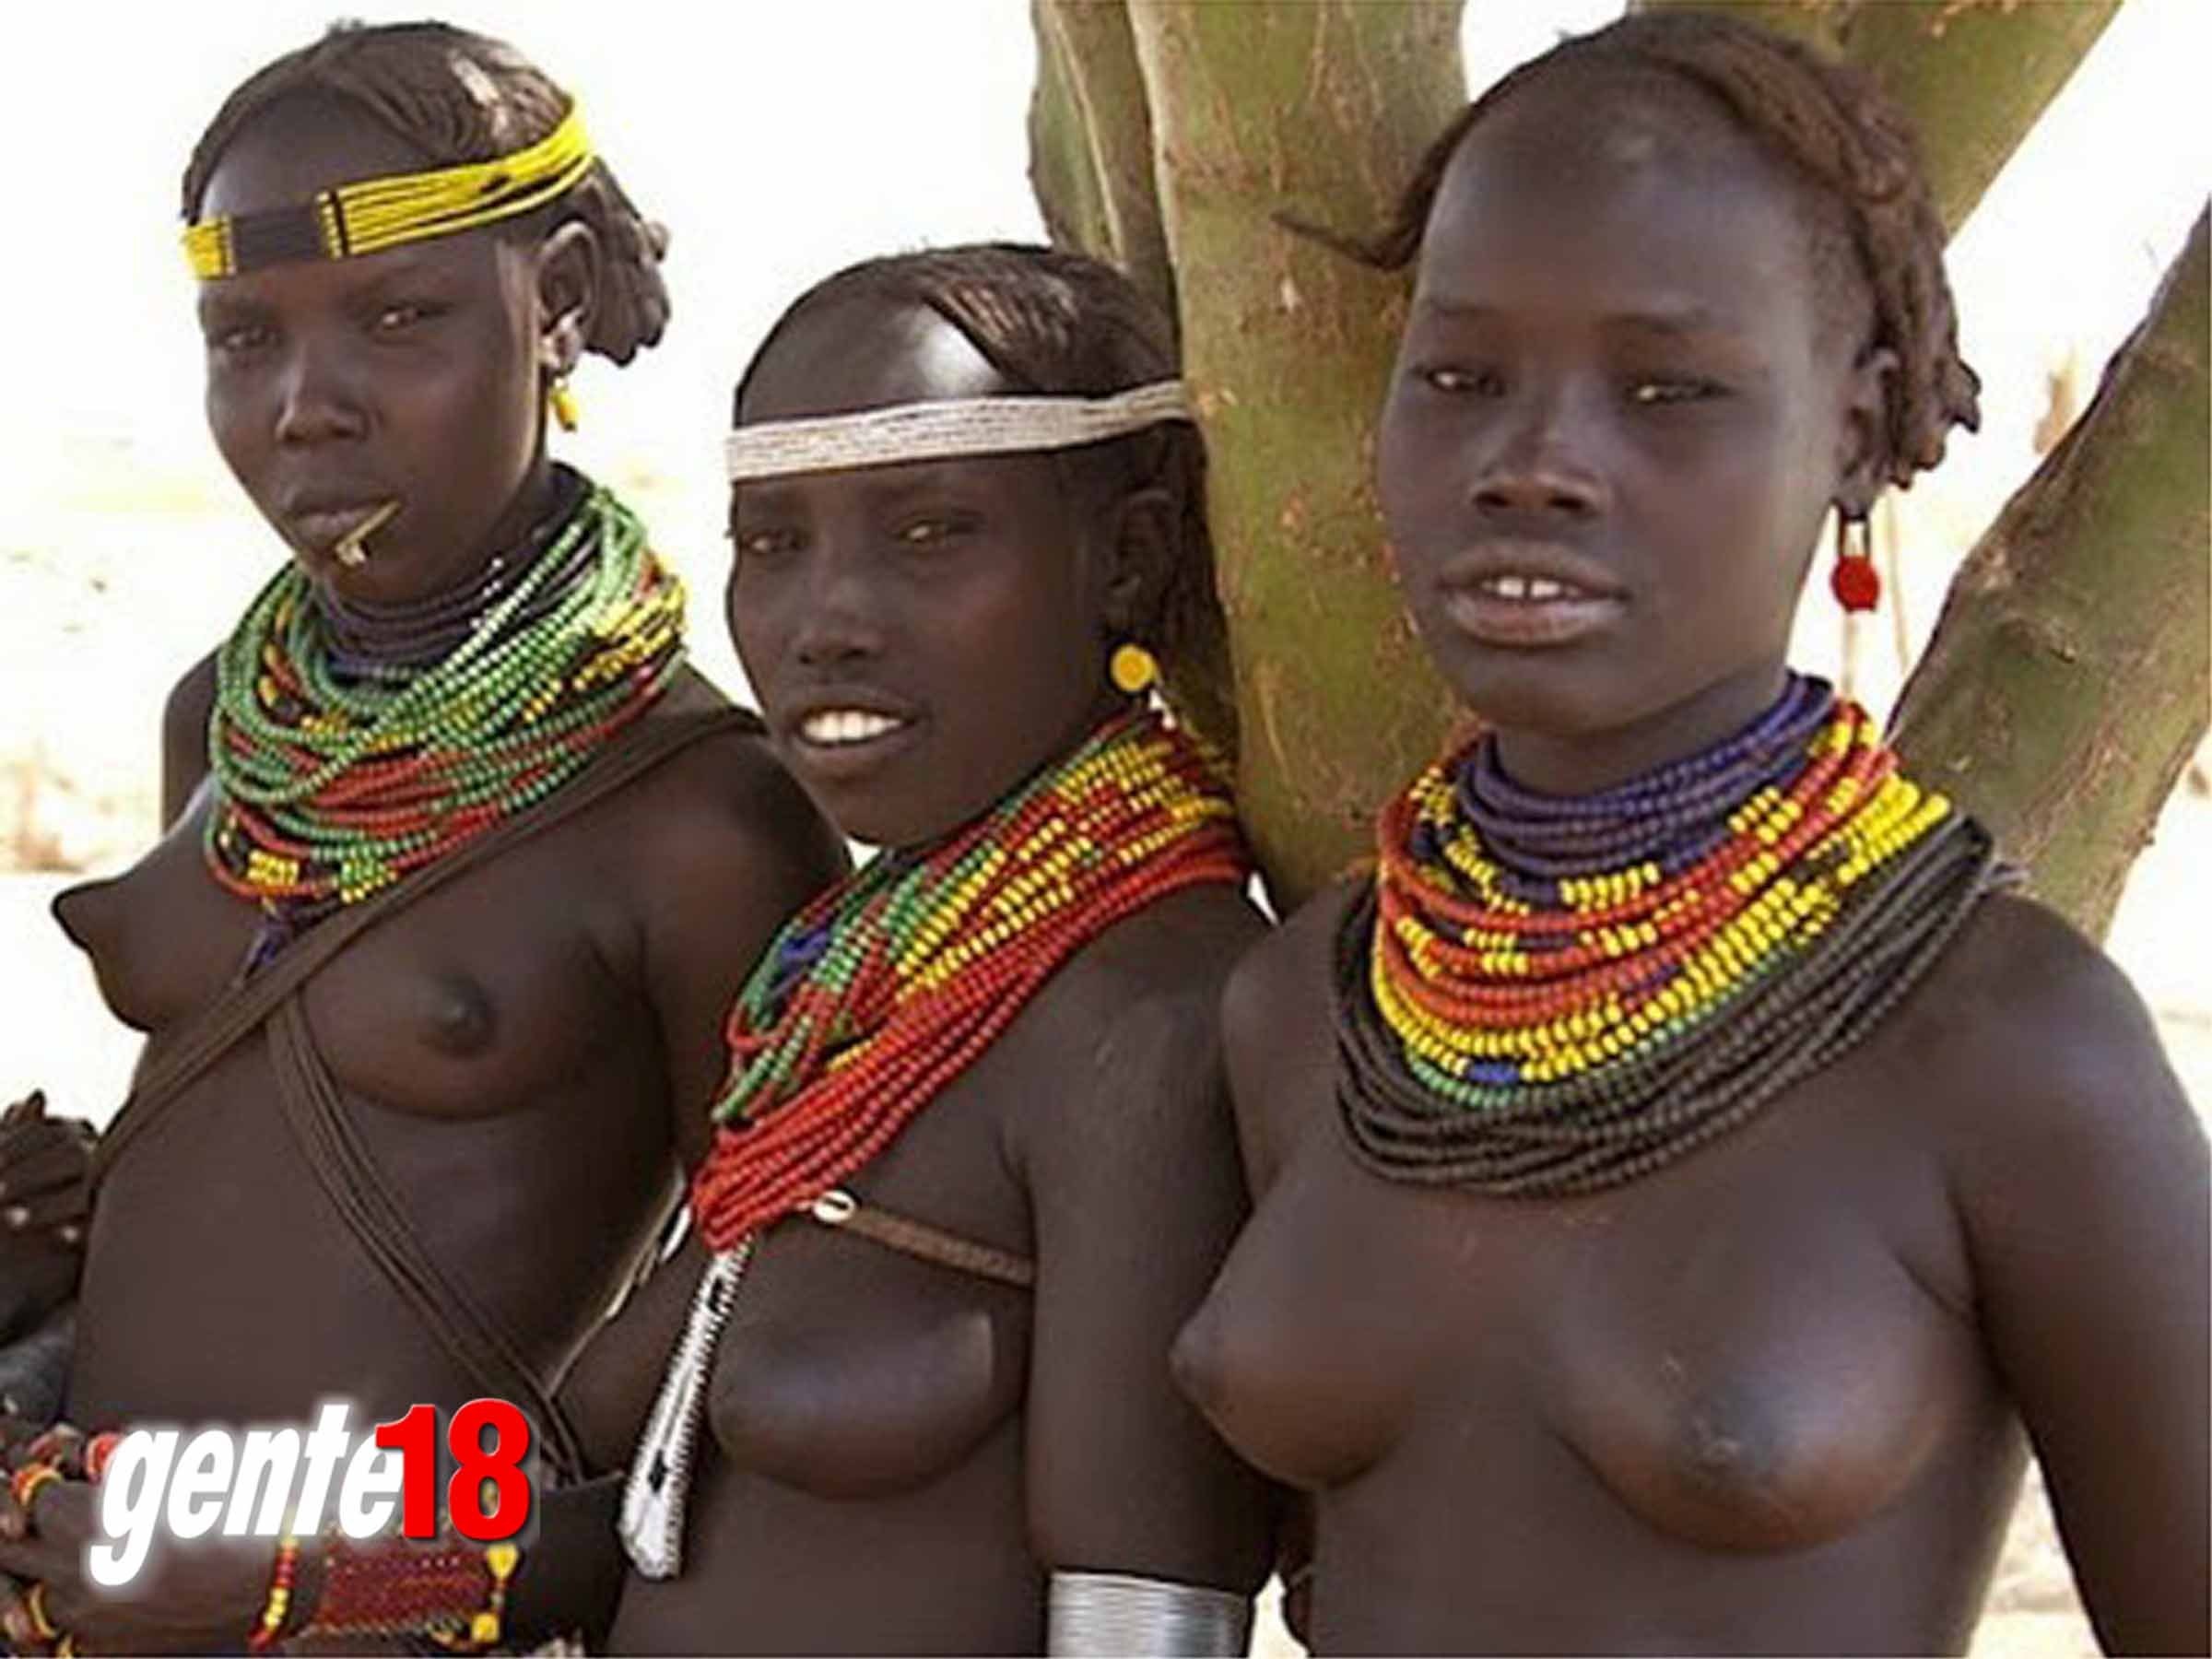 африка голых людей фото 84